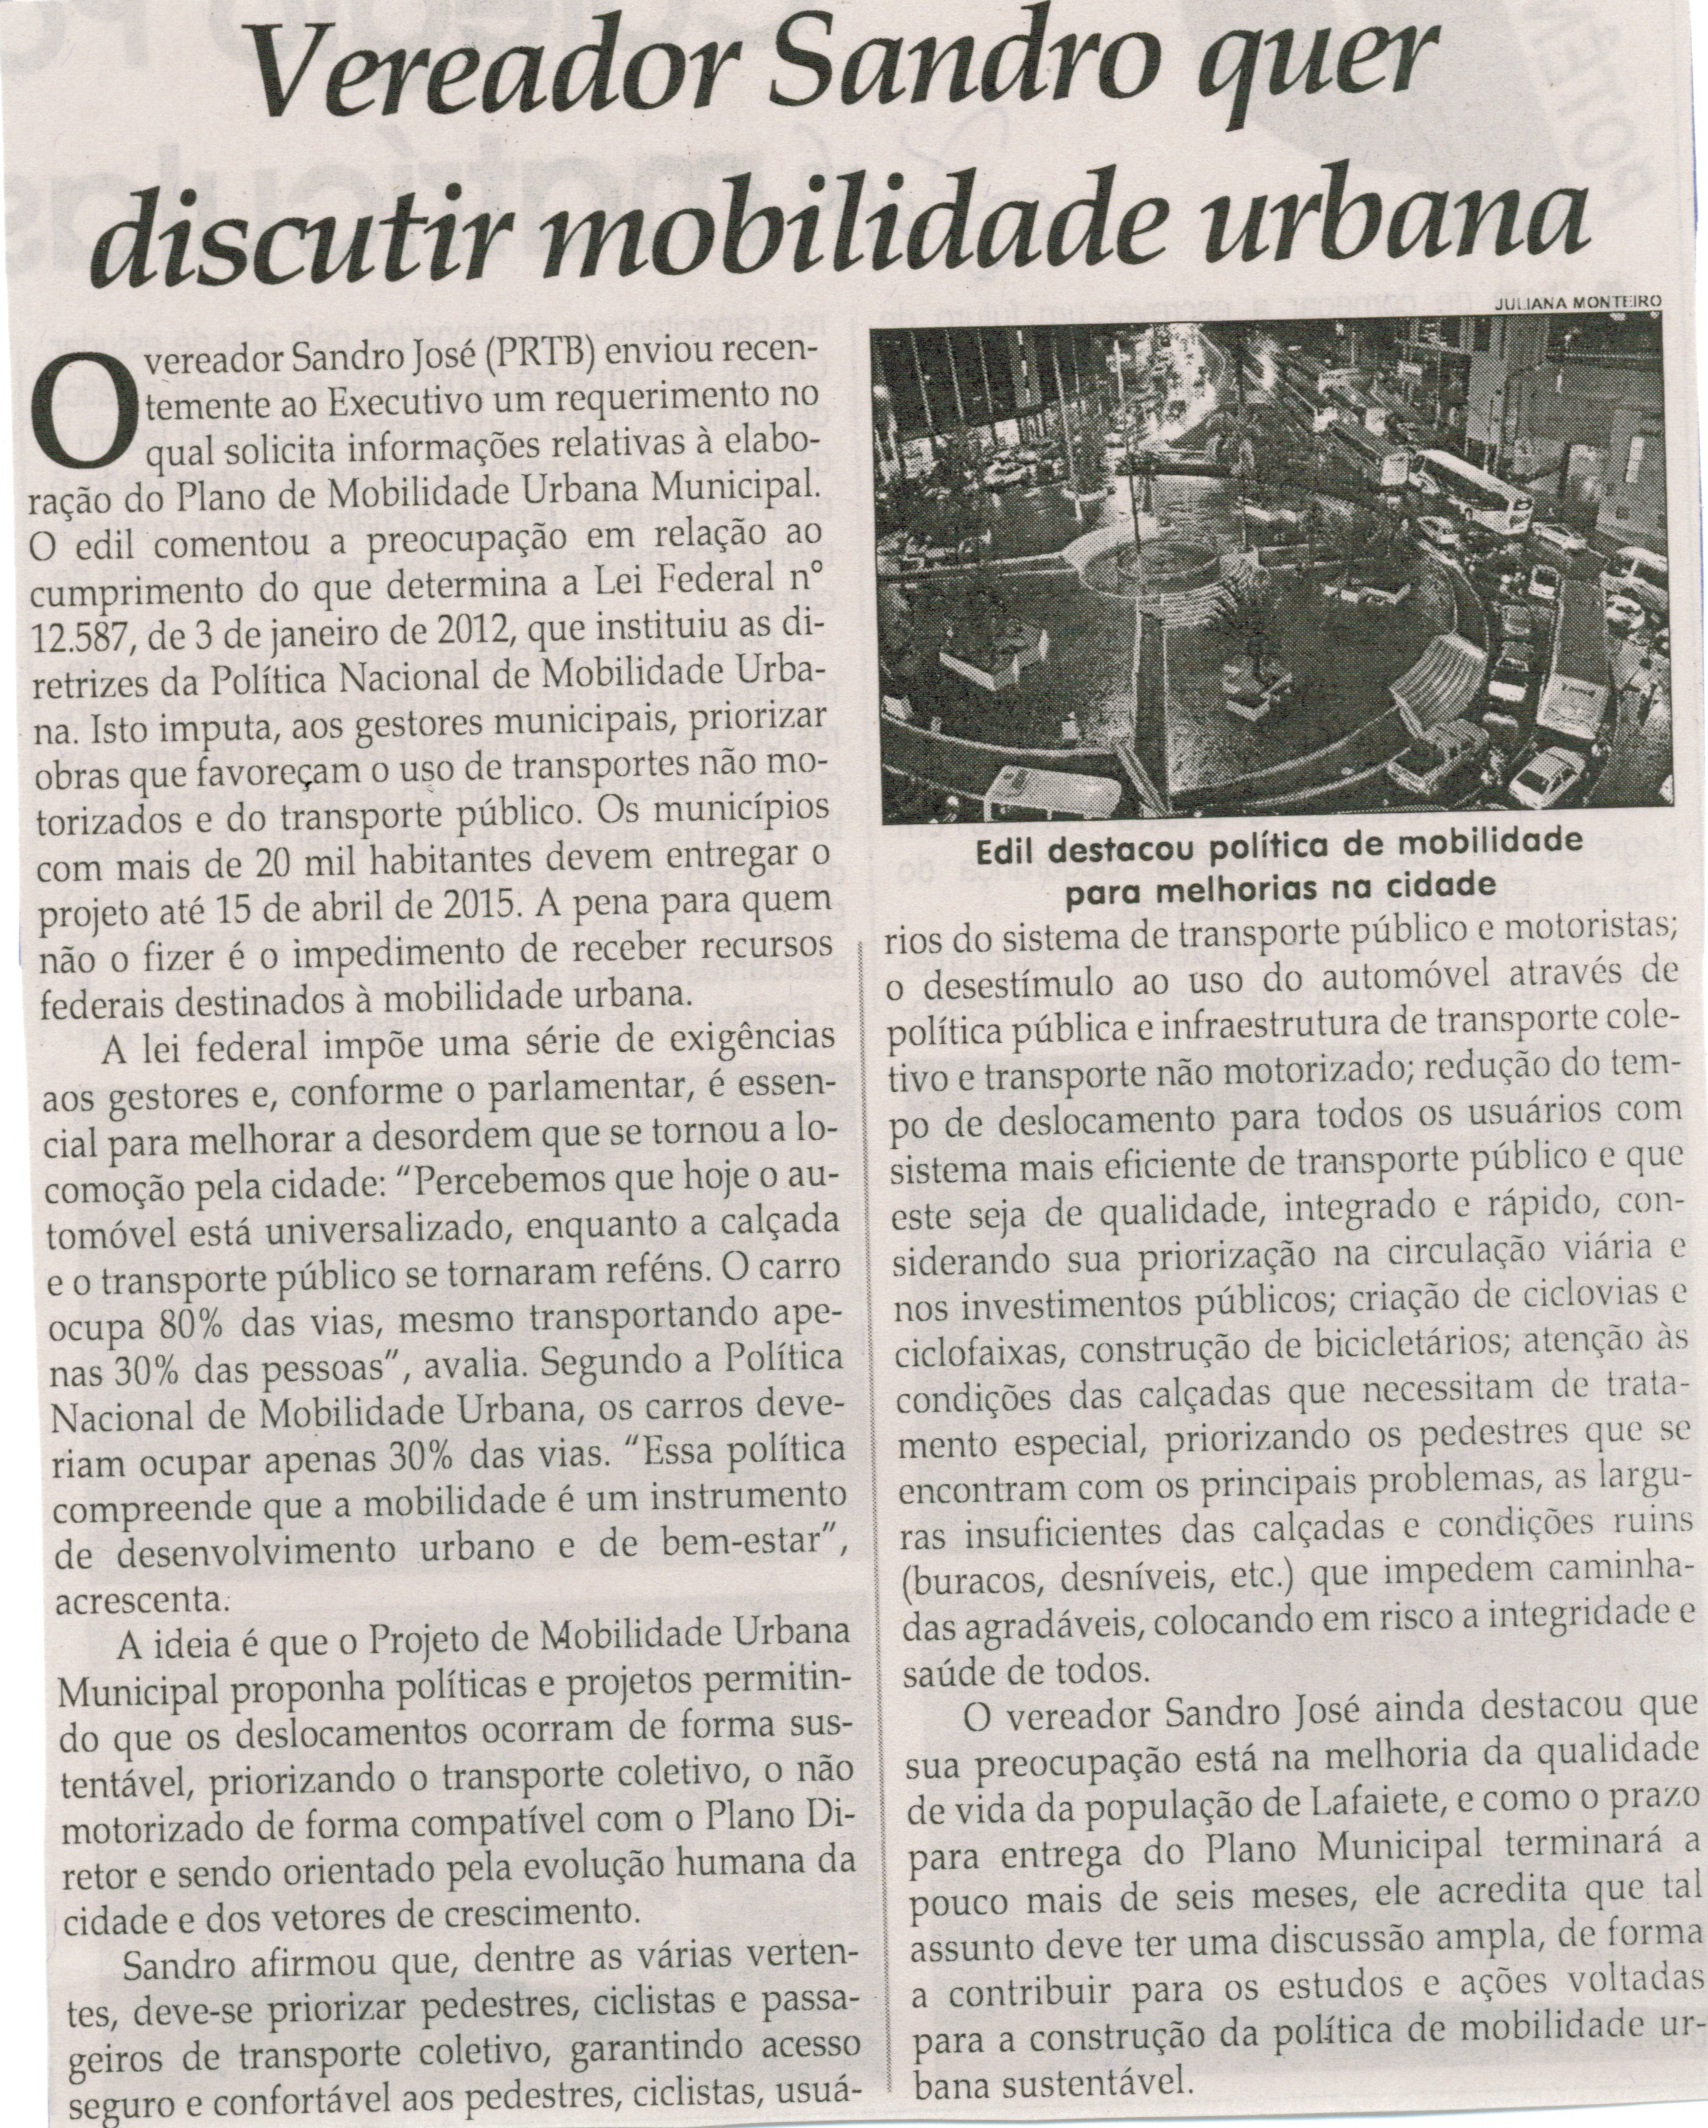 Vereador Sandro quer discutir mobilidade urbana. Jornal Correio da Cidade, Conselheiro Lafaiete,  07 nov. 2014, p. D2.